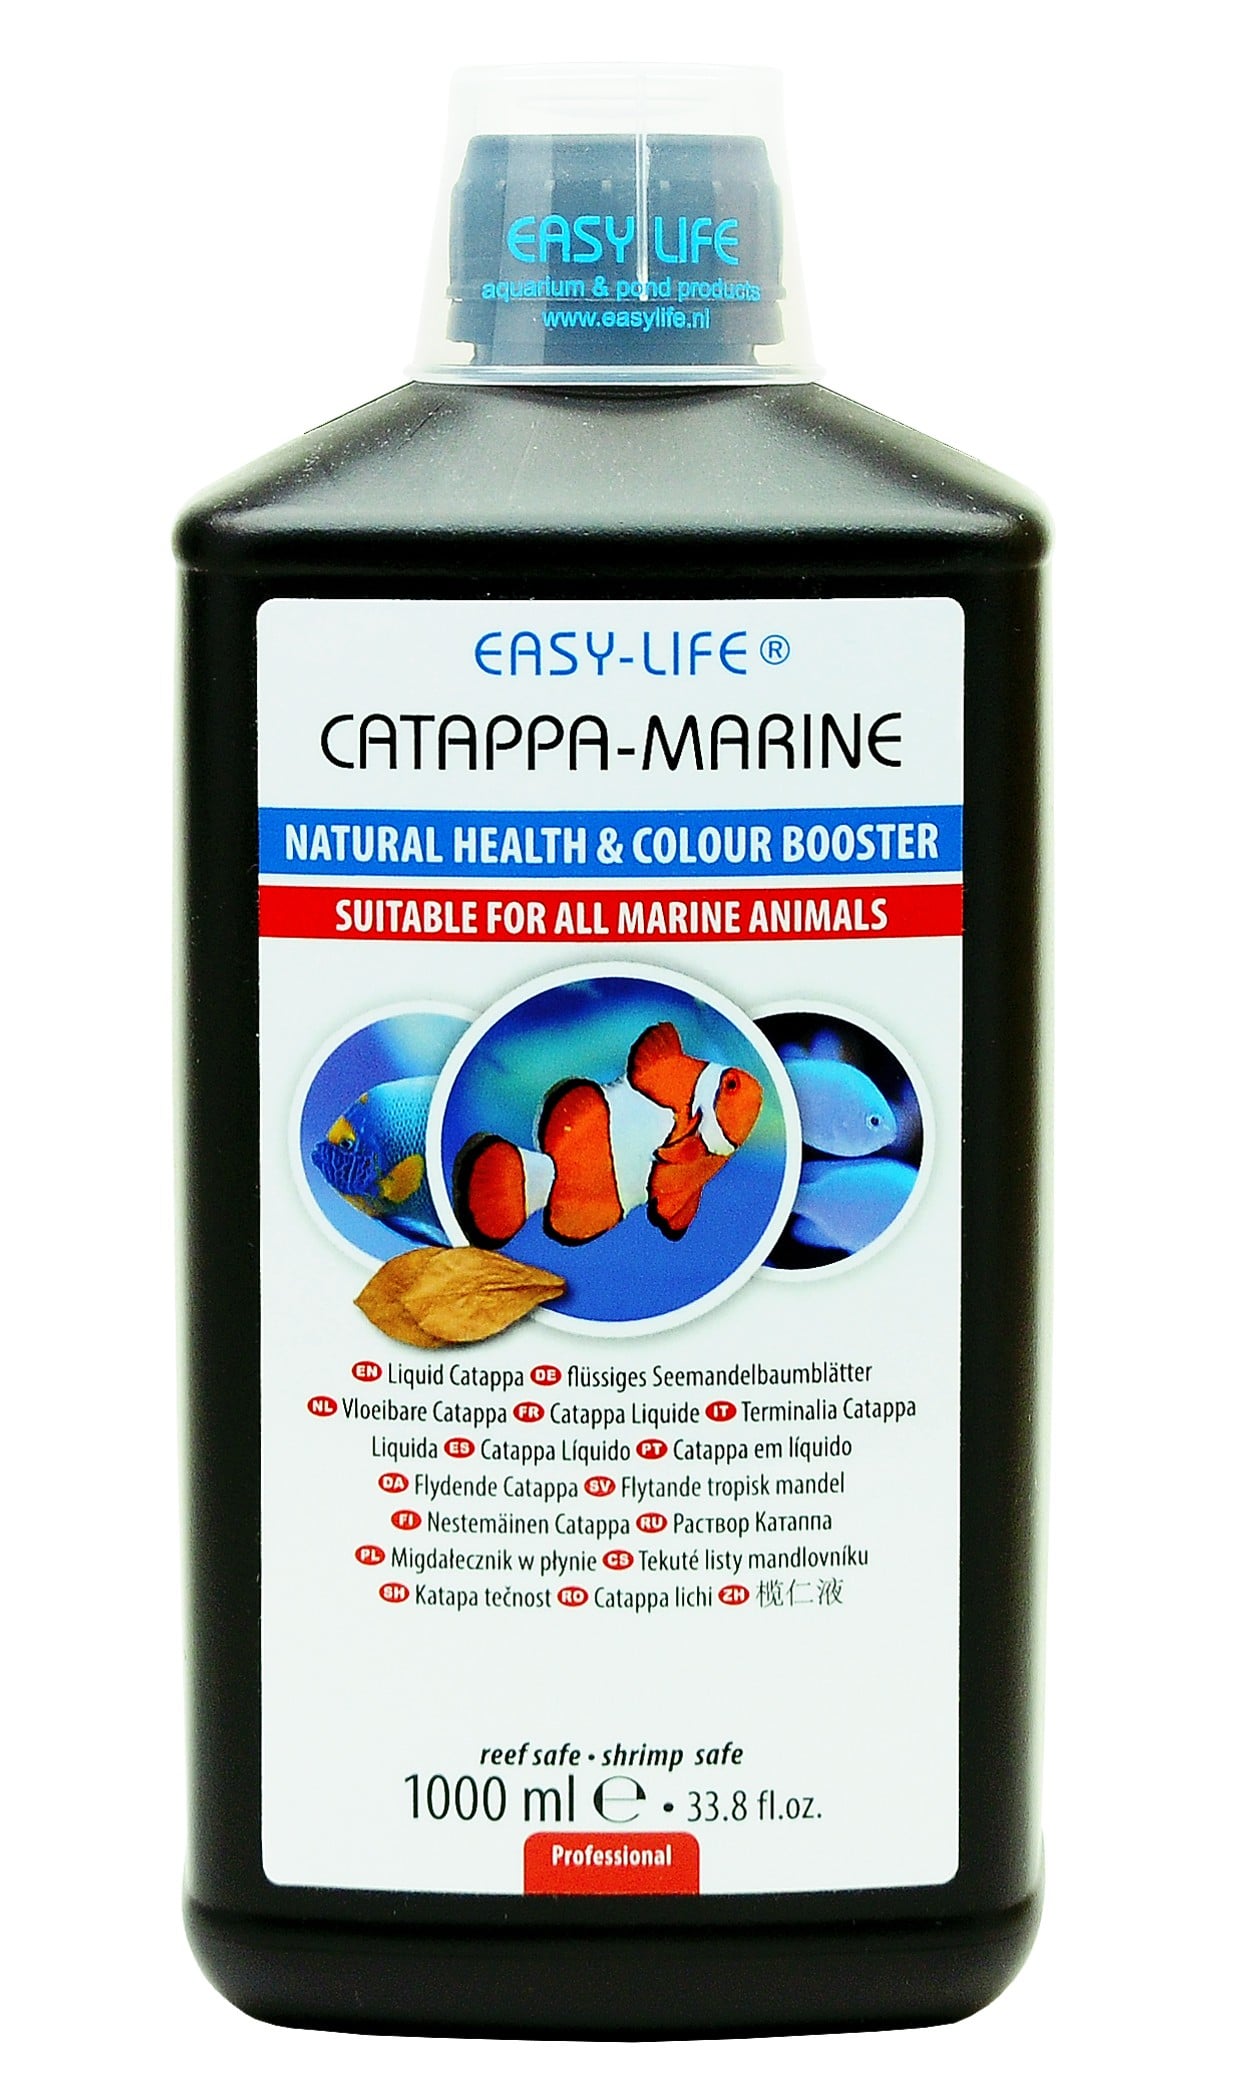 easy-life-catappa-marine-1000-ml-produit-naturel-assurant-la-bonne-sante-et-coloration-des-poissons-marins-min